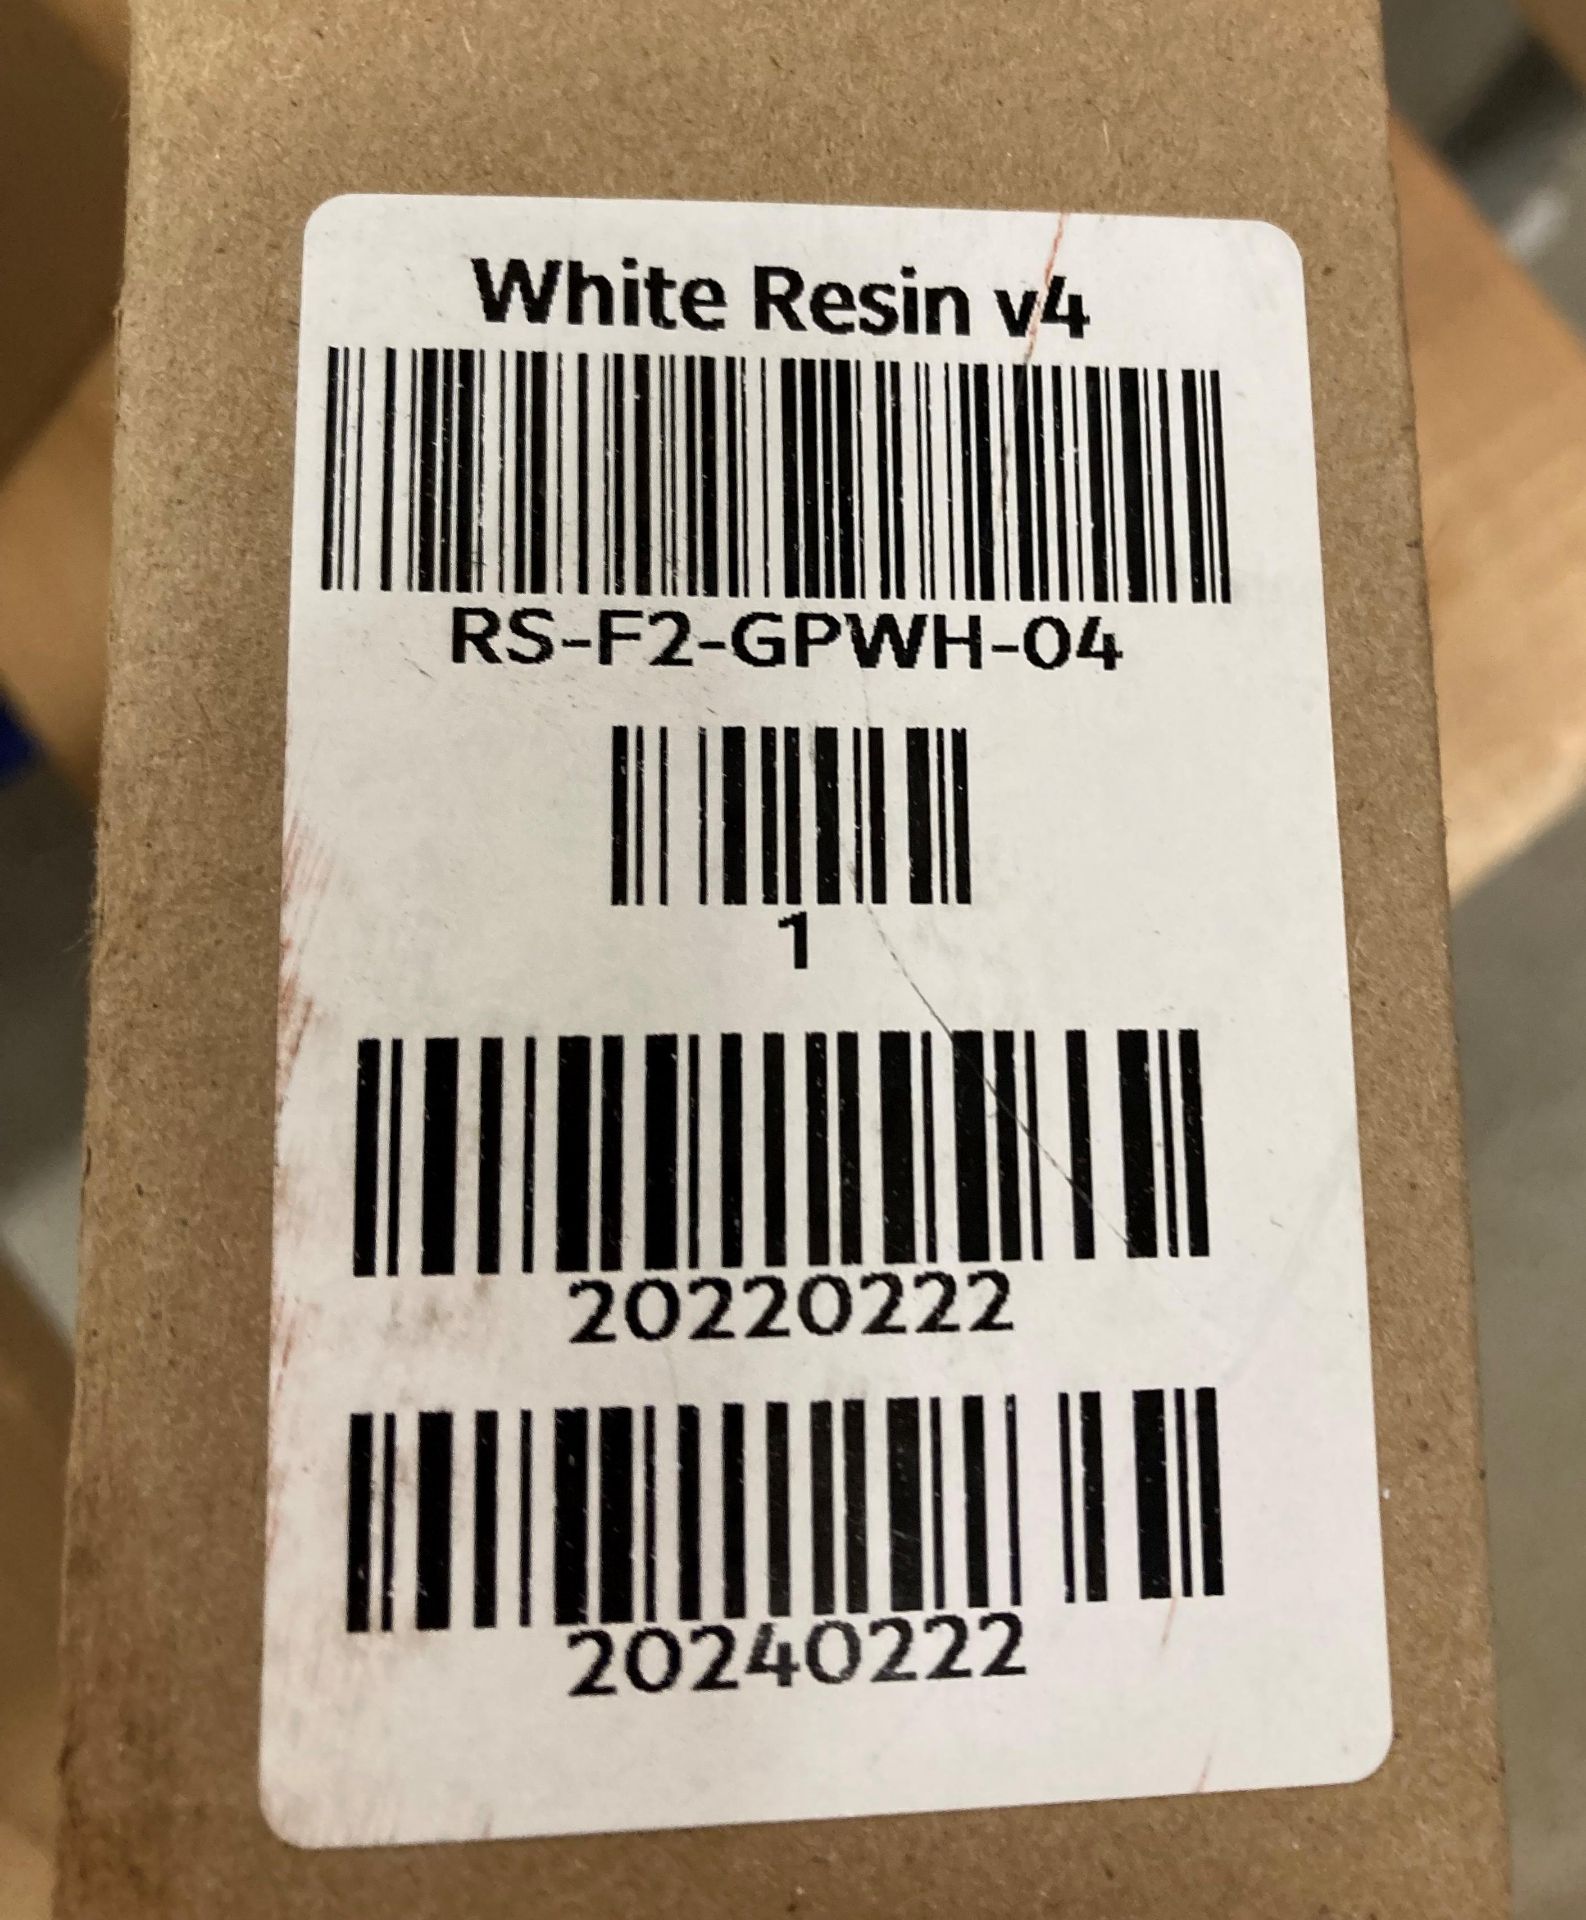 5 Formlabs Photopolymer Resin Cartridges - white resin V4 (K10) - Image 2 of 2